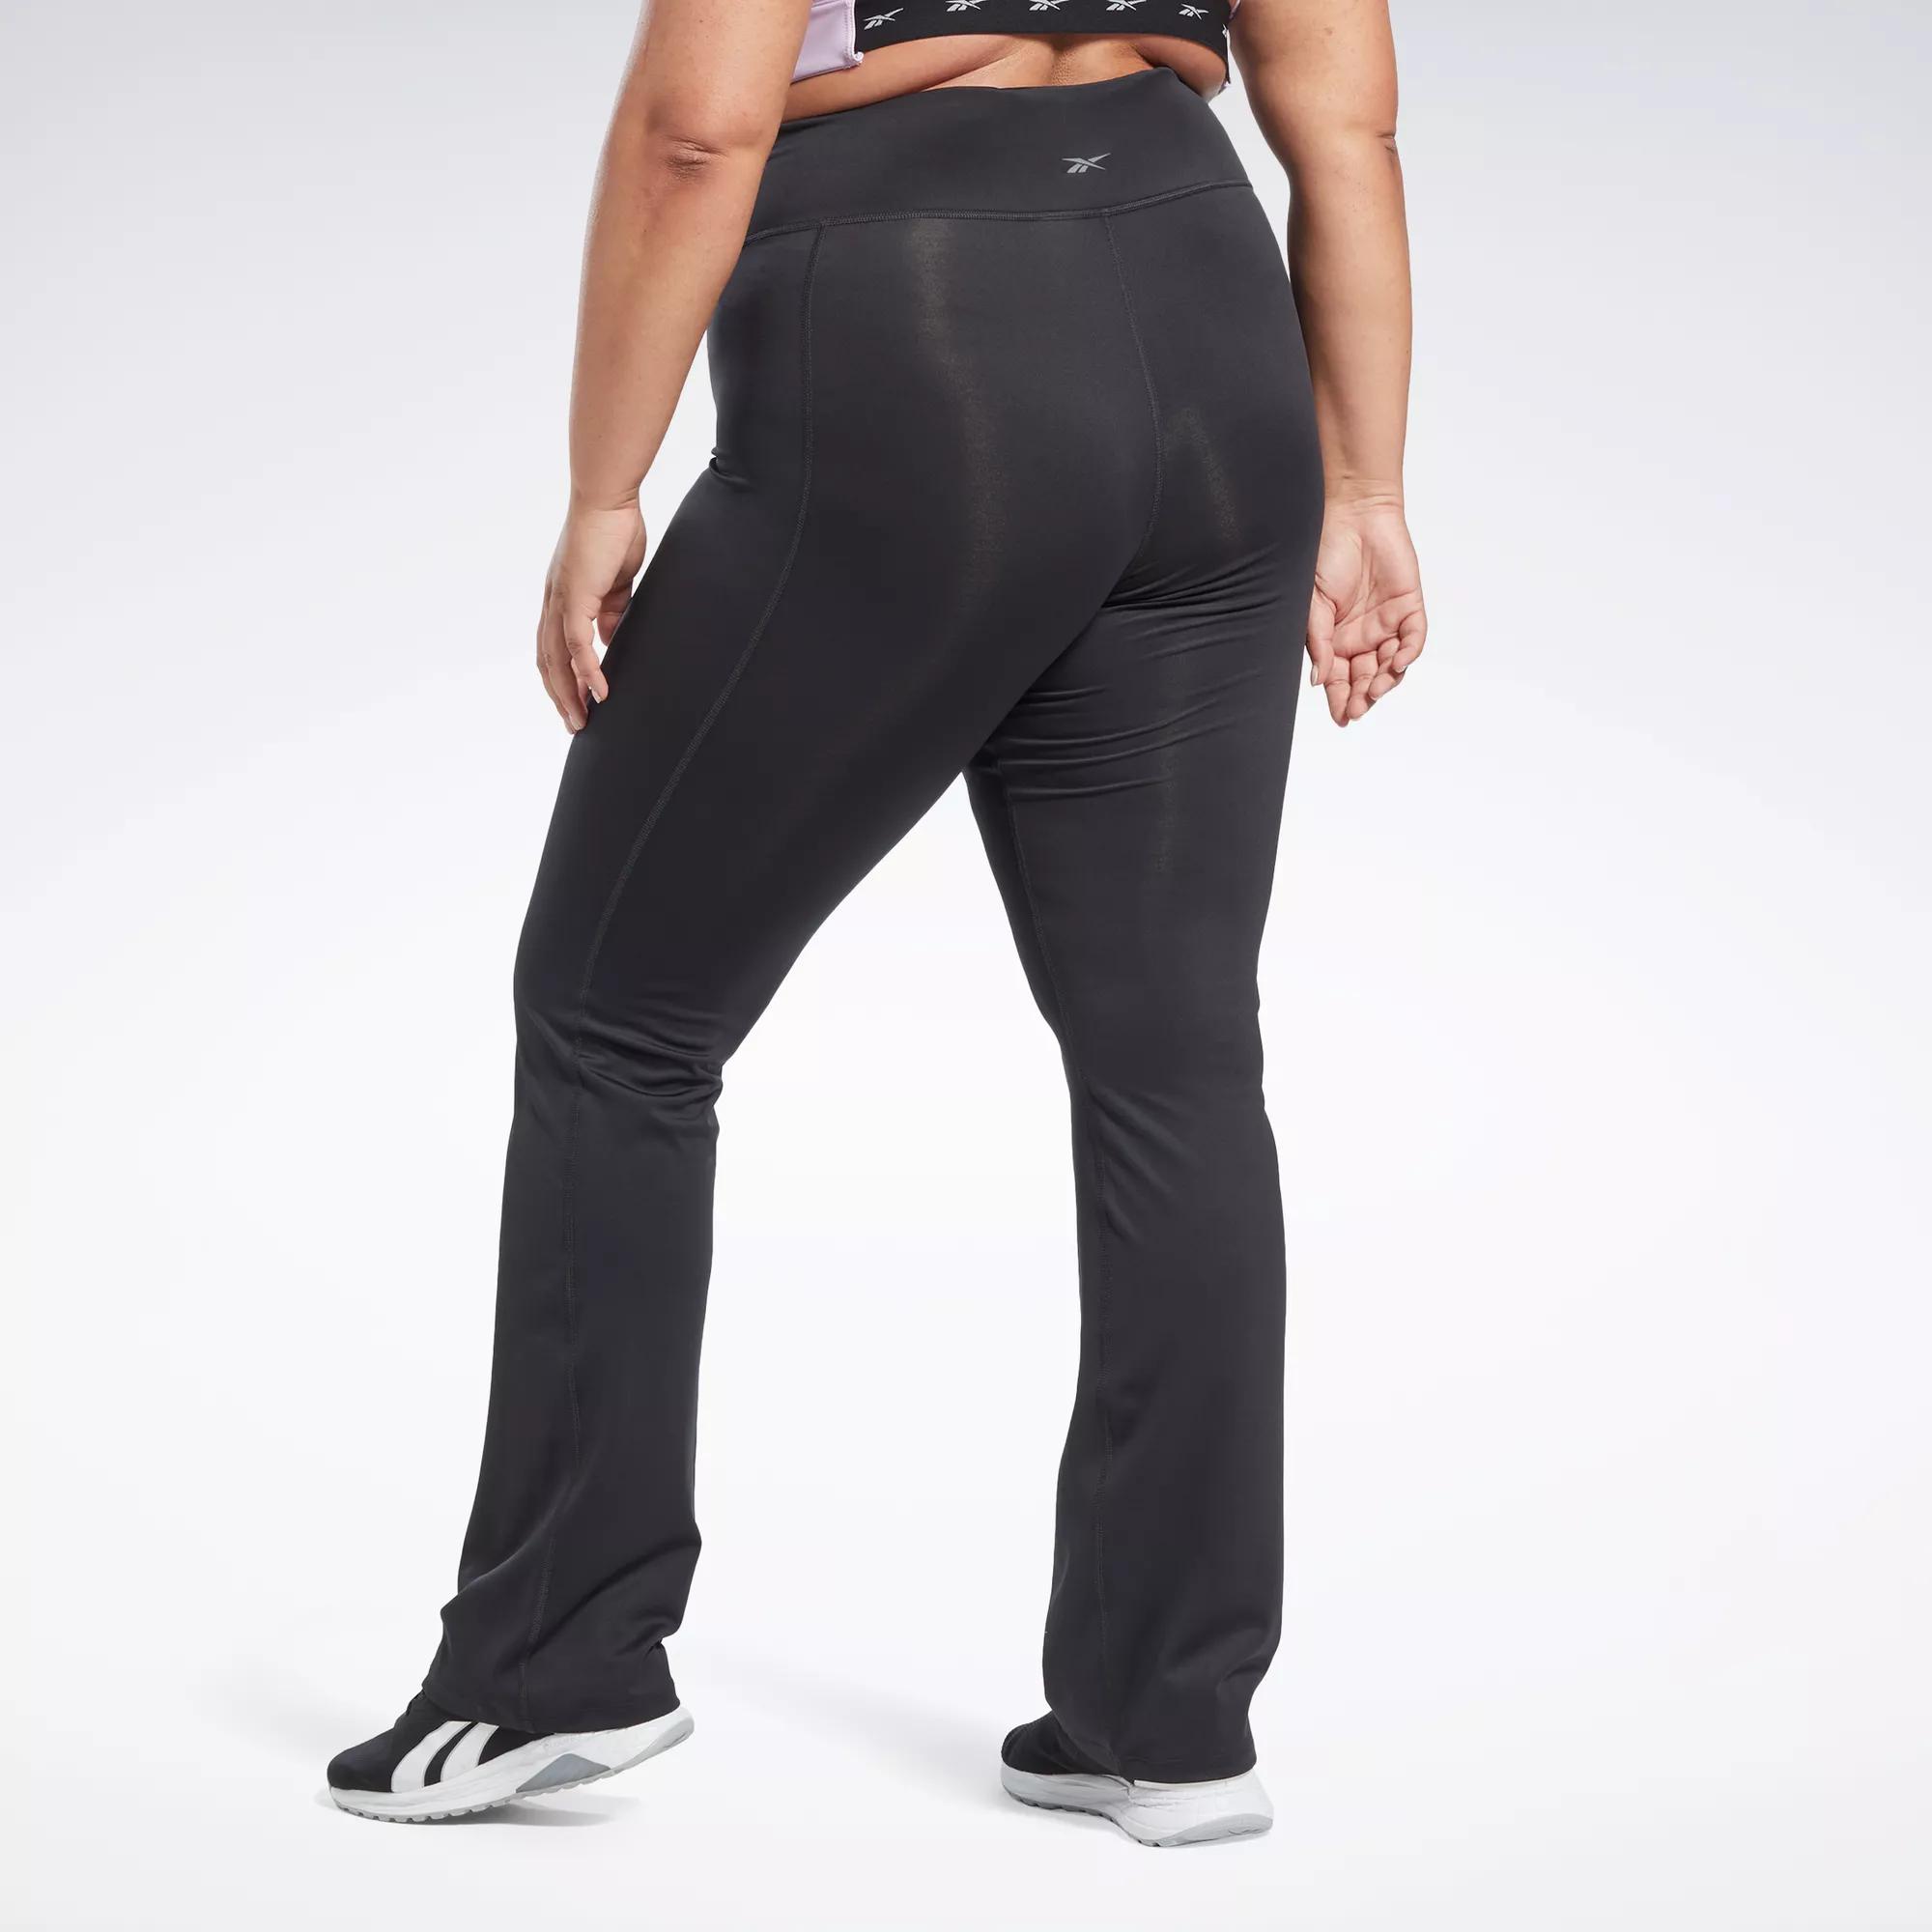 Workout Ready Pant Program Bootcut Pants (Plus Size) - Night Black